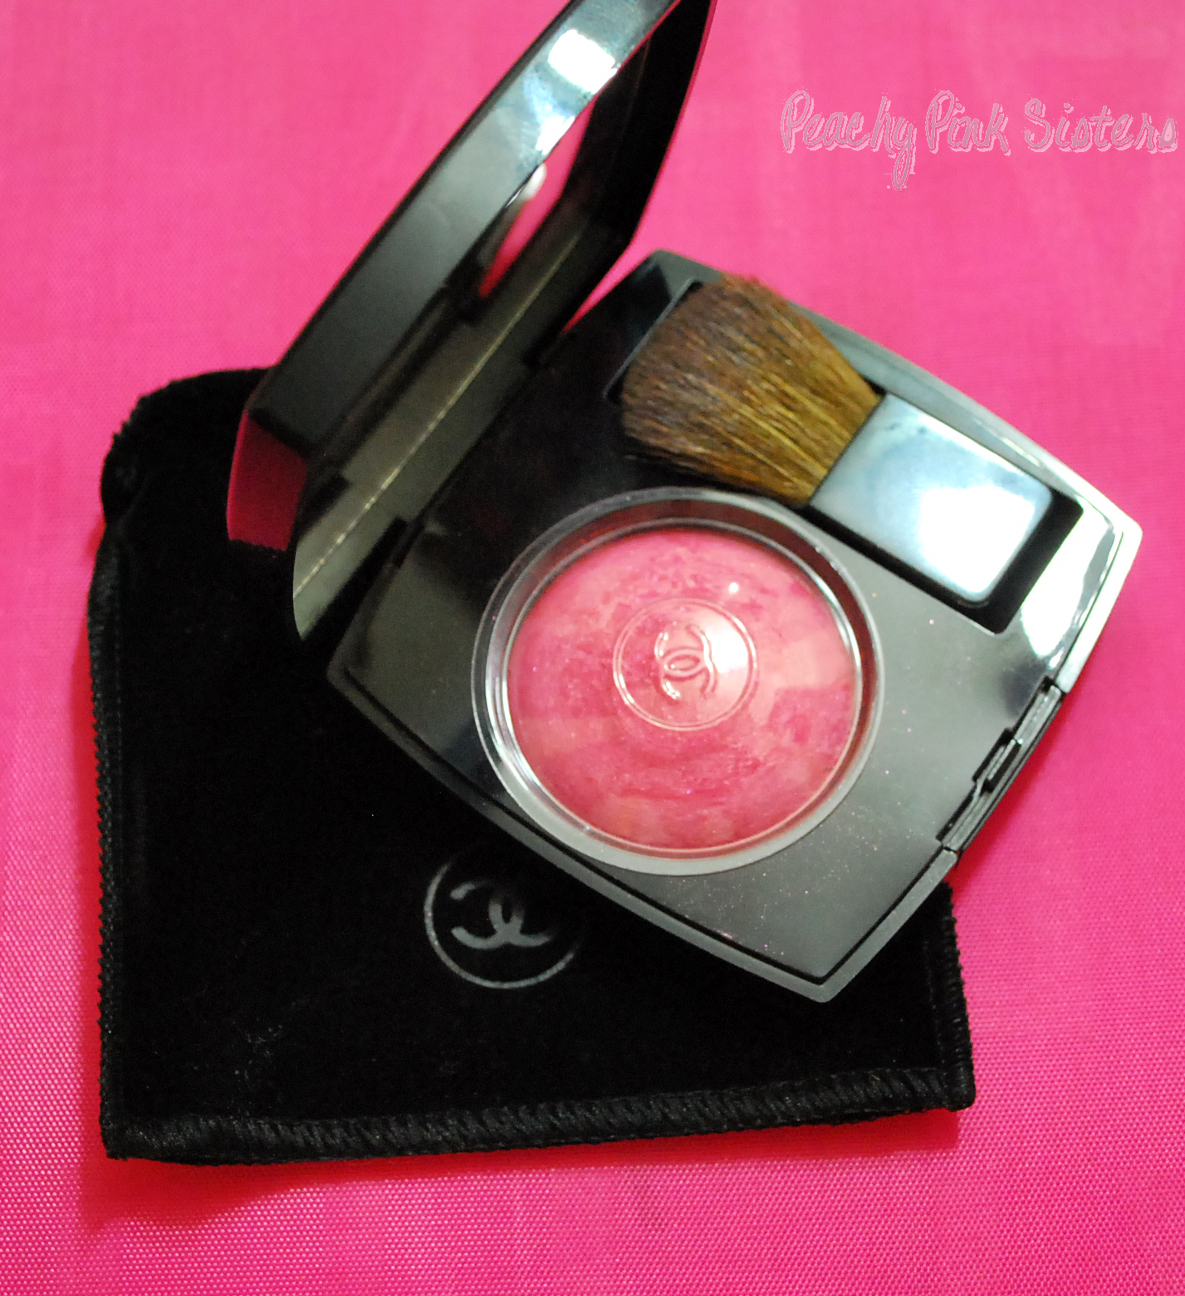 Chanel Joues Contraste Powder Blush - 330 Rose Petillant , 0.14 oz Blush 